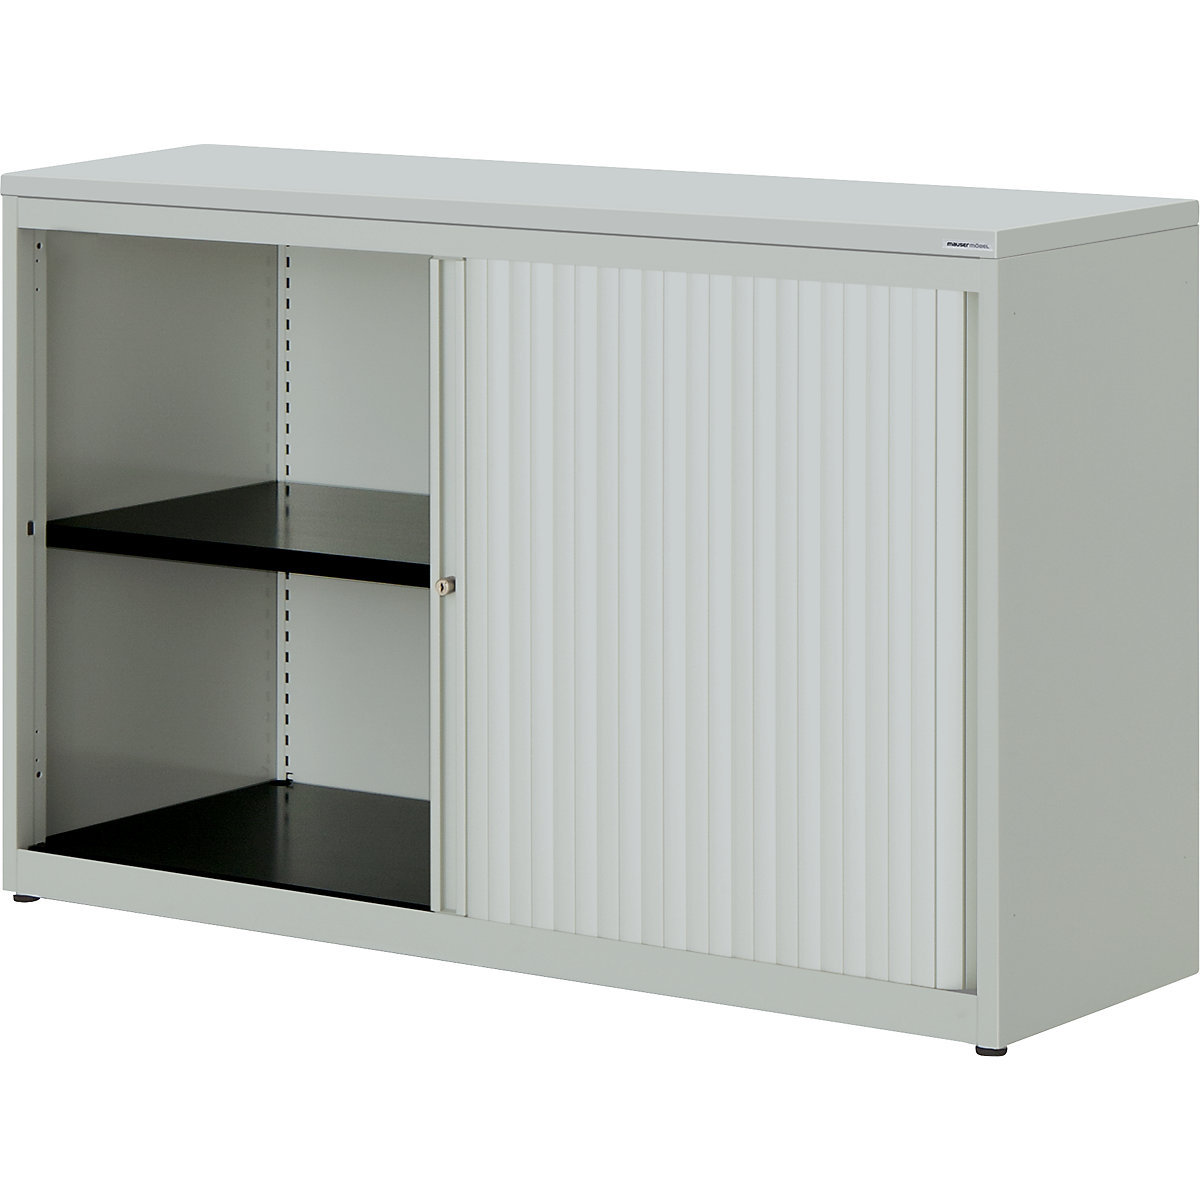 Horizontal roller shutter cupboard – mauser, HxWxD 830 x 1200 x 432 mm, plastic panel, 1 shelf, light grey / light grey / light grey-4